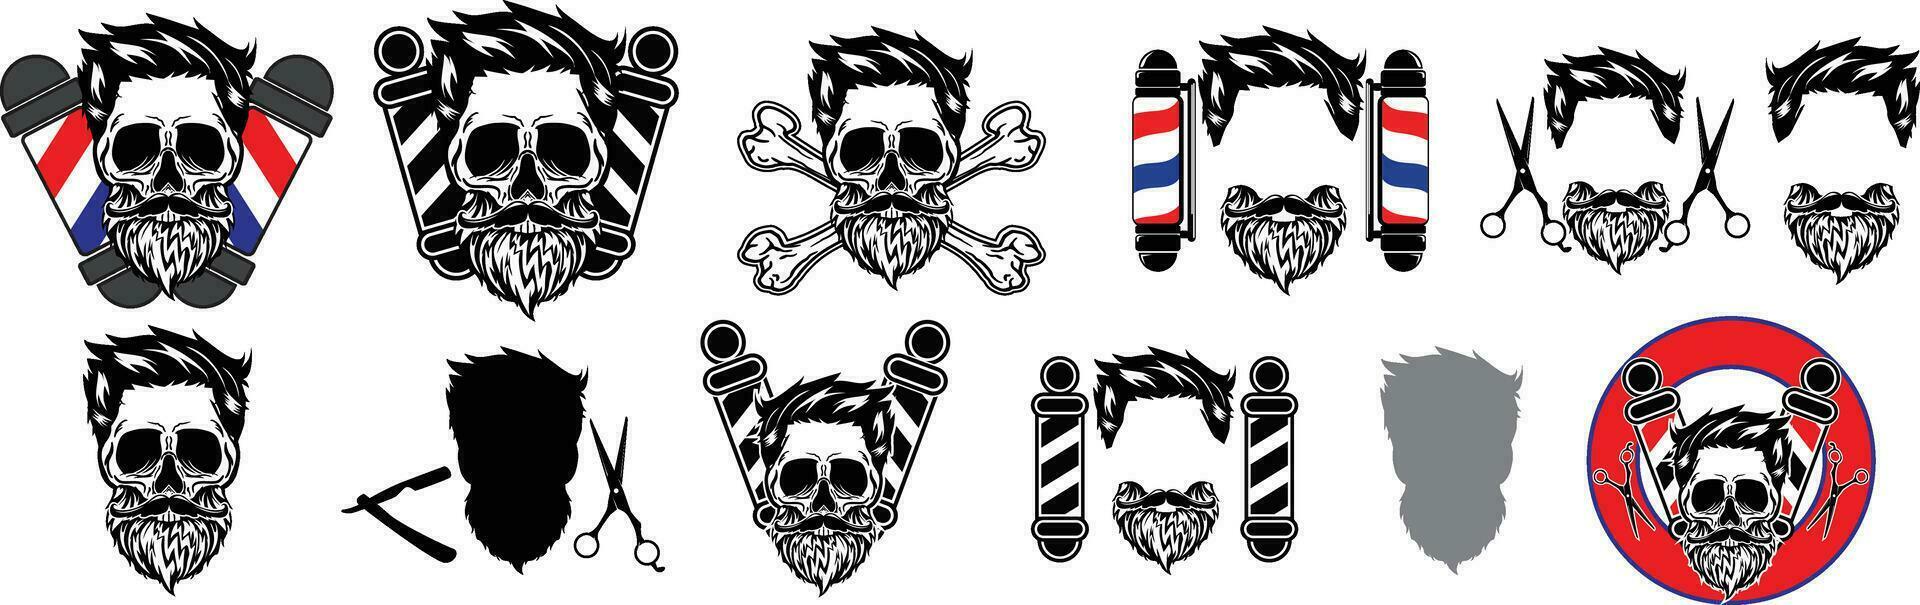 uppsättning av årgång frisör emblem, etiketter, märken, logotyper. vektor